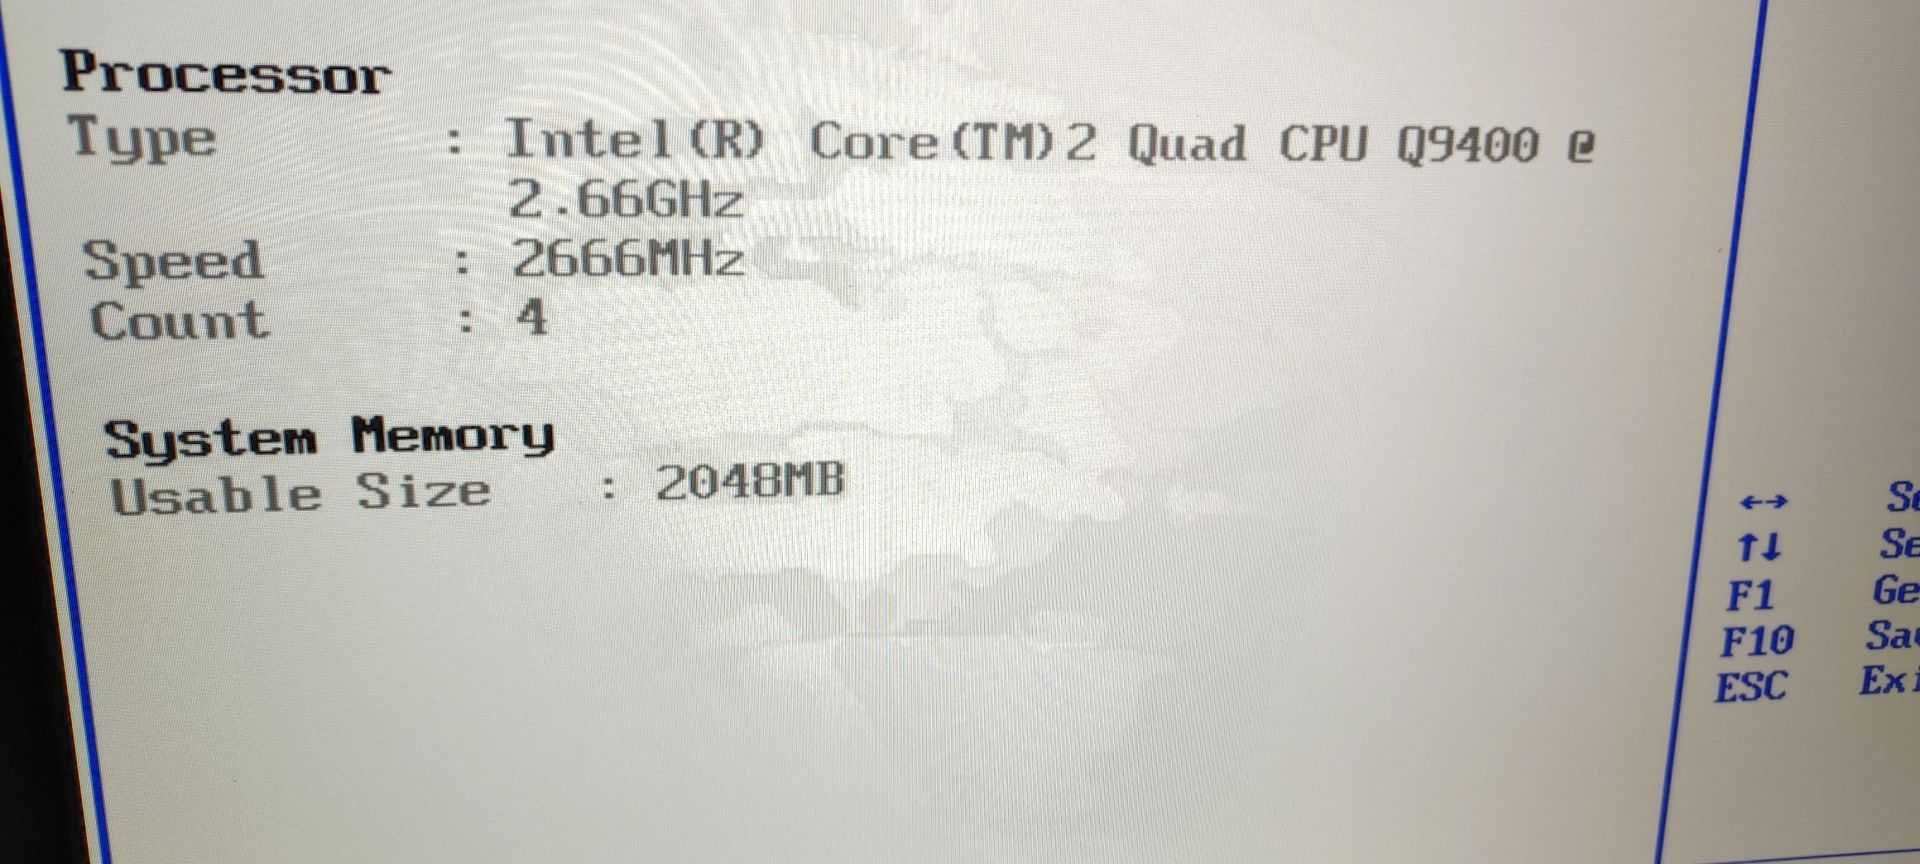 Komputer PC Intel Core 2 Quad, 2 Gb Ram, Win 7